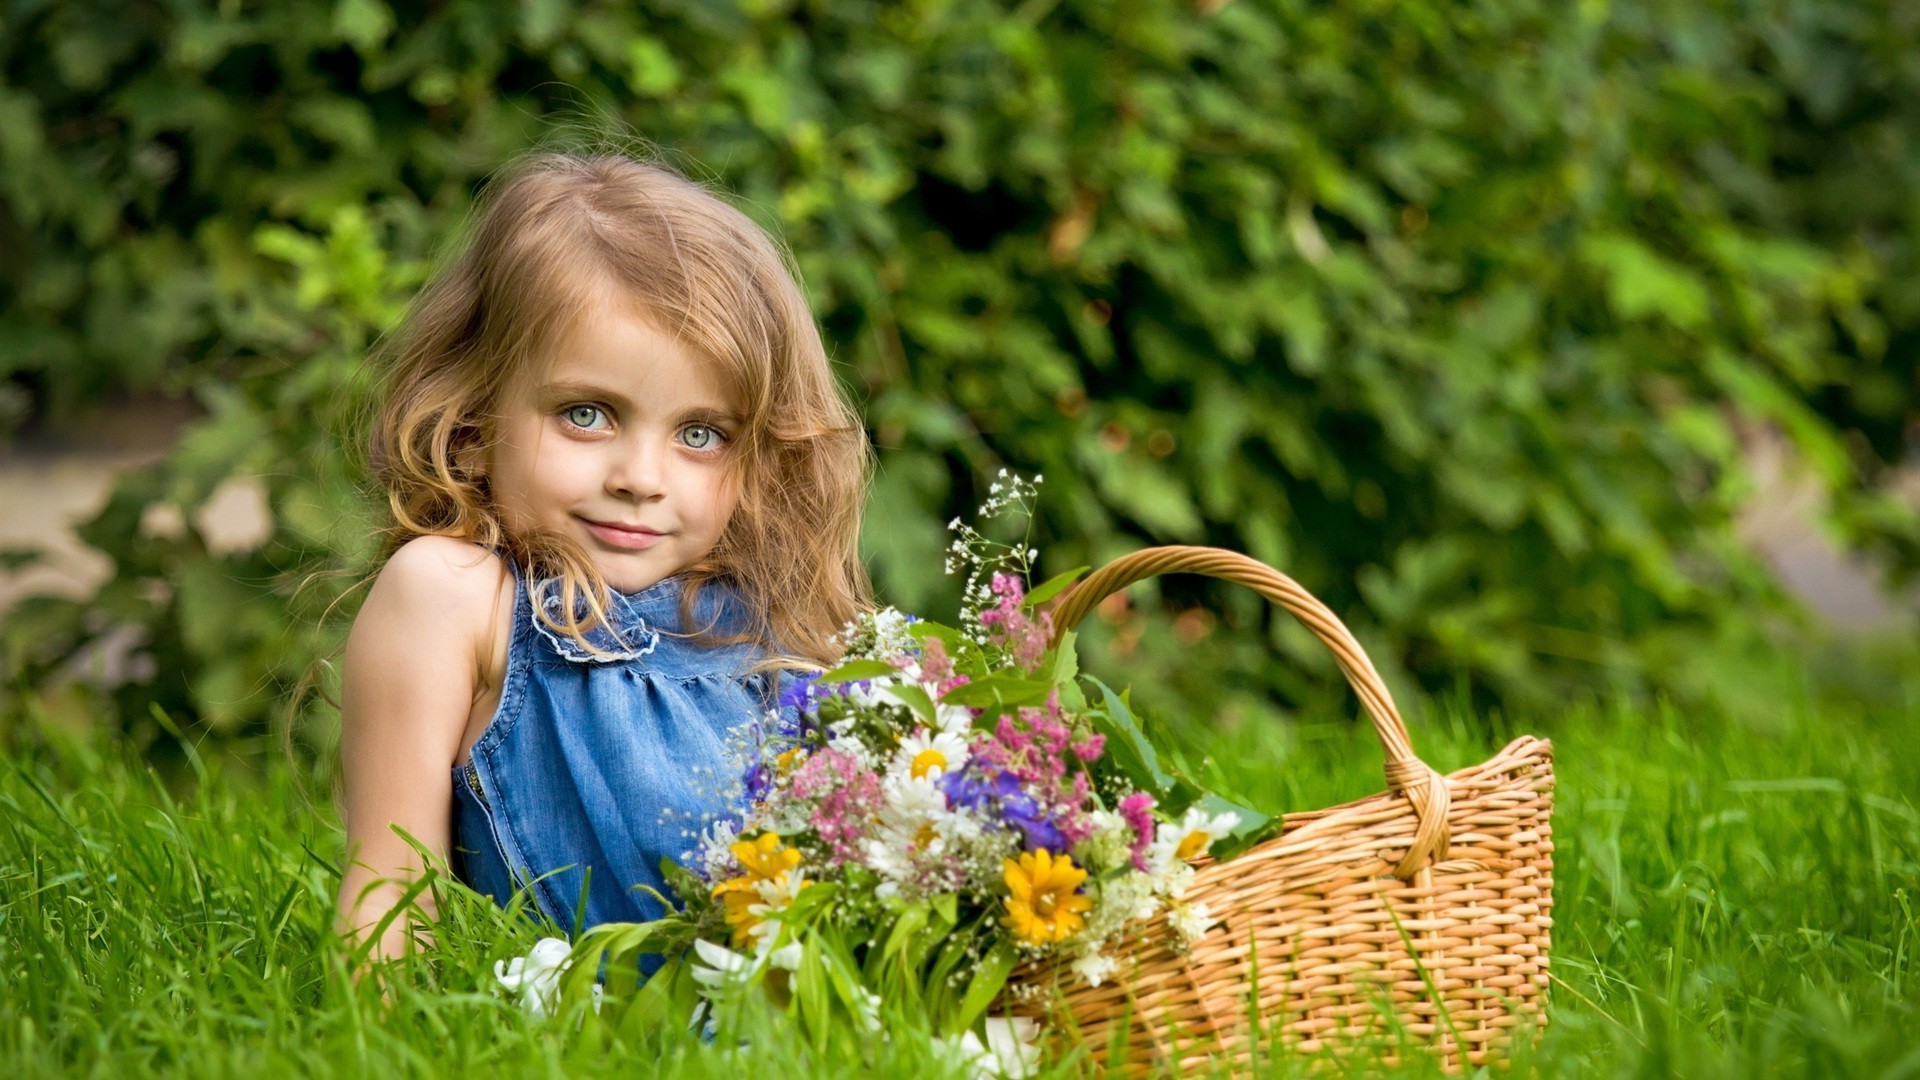 дети на природе природа лето трава корзина ребенок парк на открытом воздухе мало милые цветок сад газон отдых сенокос удовольствие задворк радость счастье поле релаксация